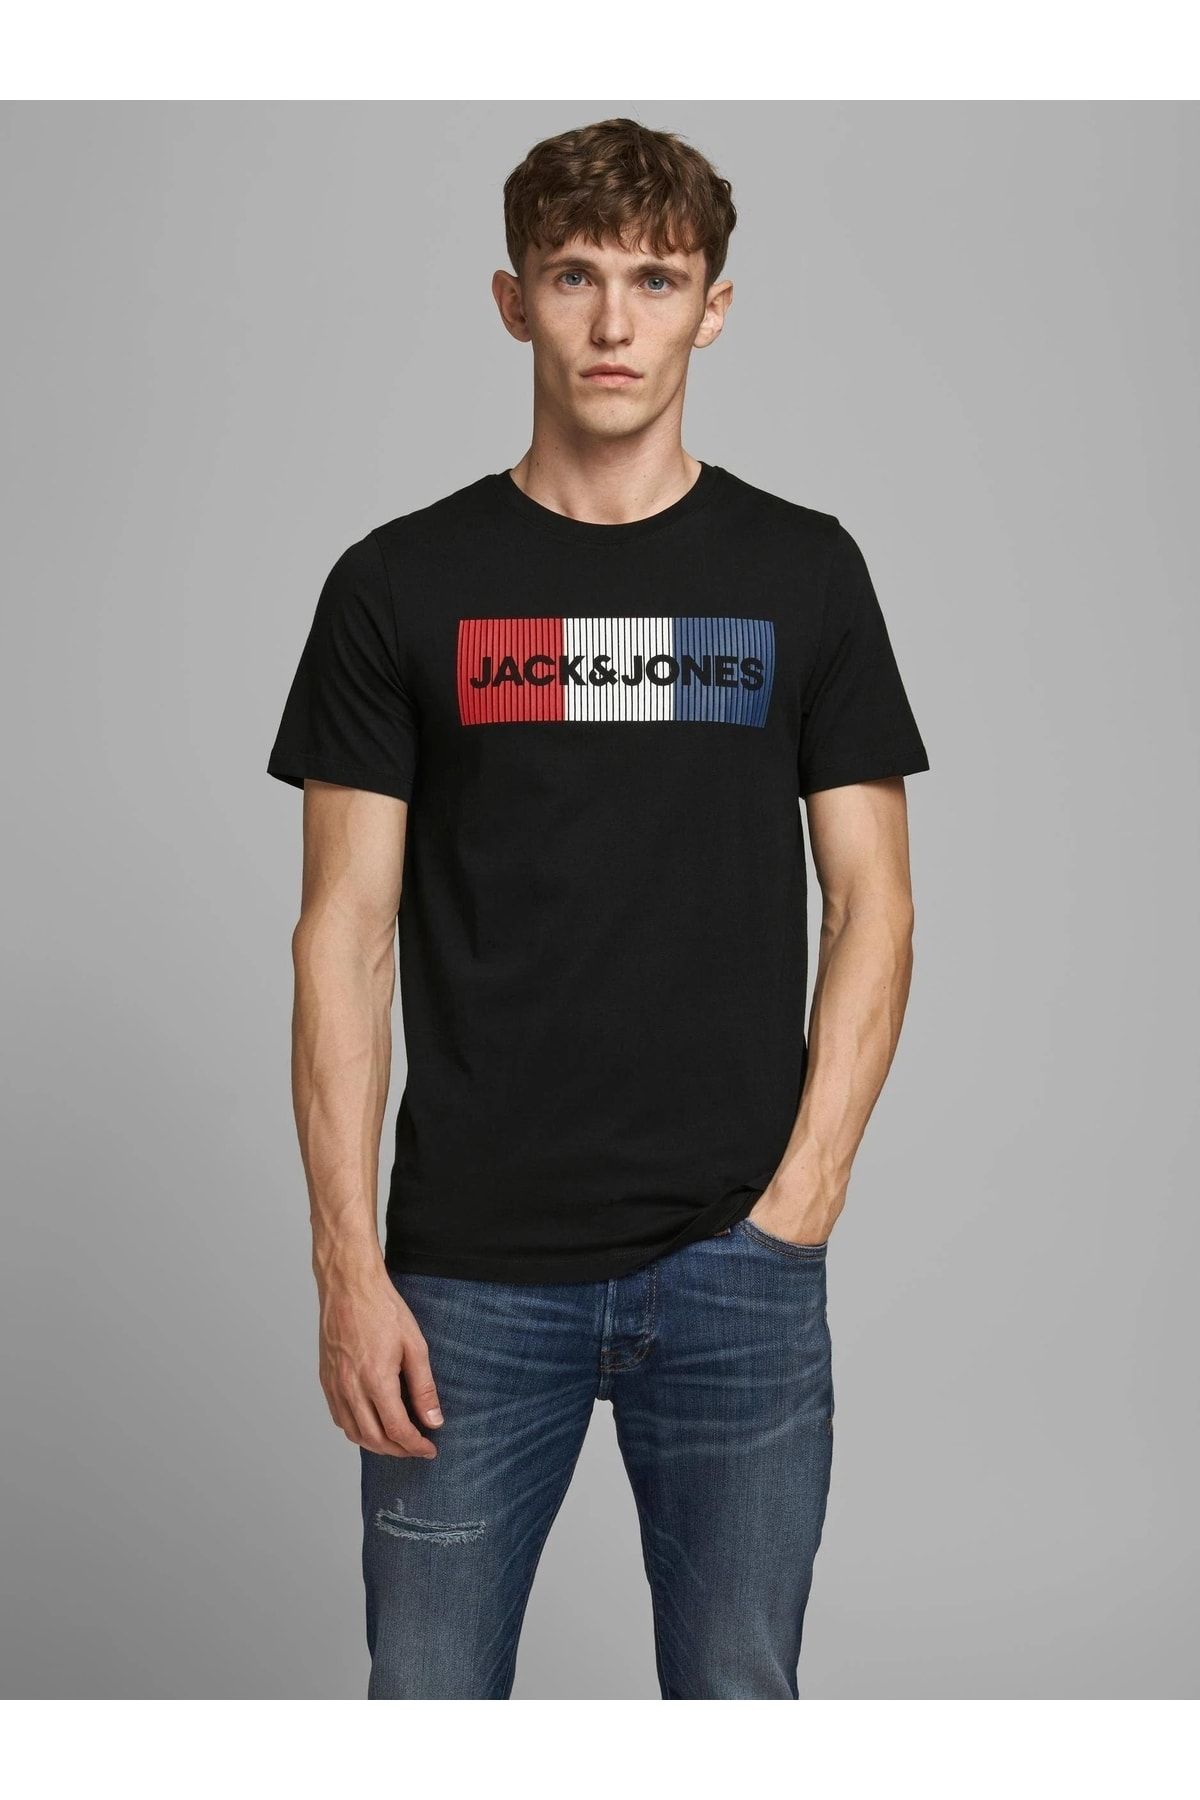 تی شرت مردانه مشکی جک اند جونز Jack & Jones (برند دانمارک)